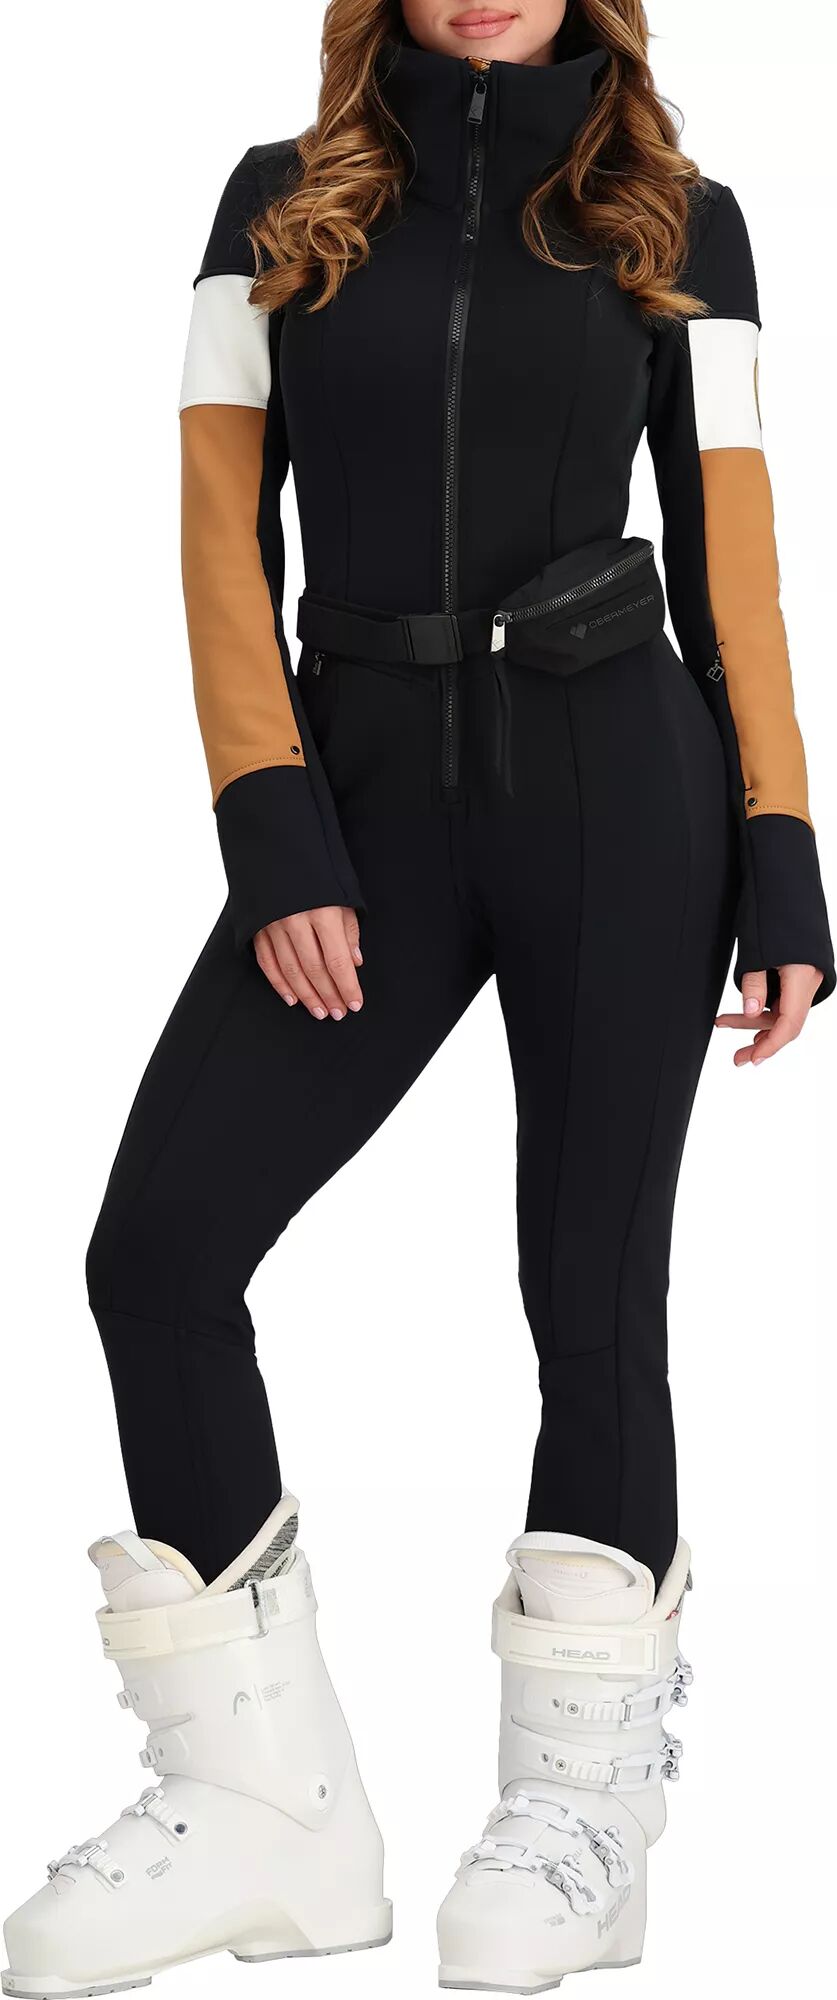 Photos - Ski Wear Obermeyer Women's Kitt ITB Softshell Suit, Size 12, Brown 23obewwktzstxxxx